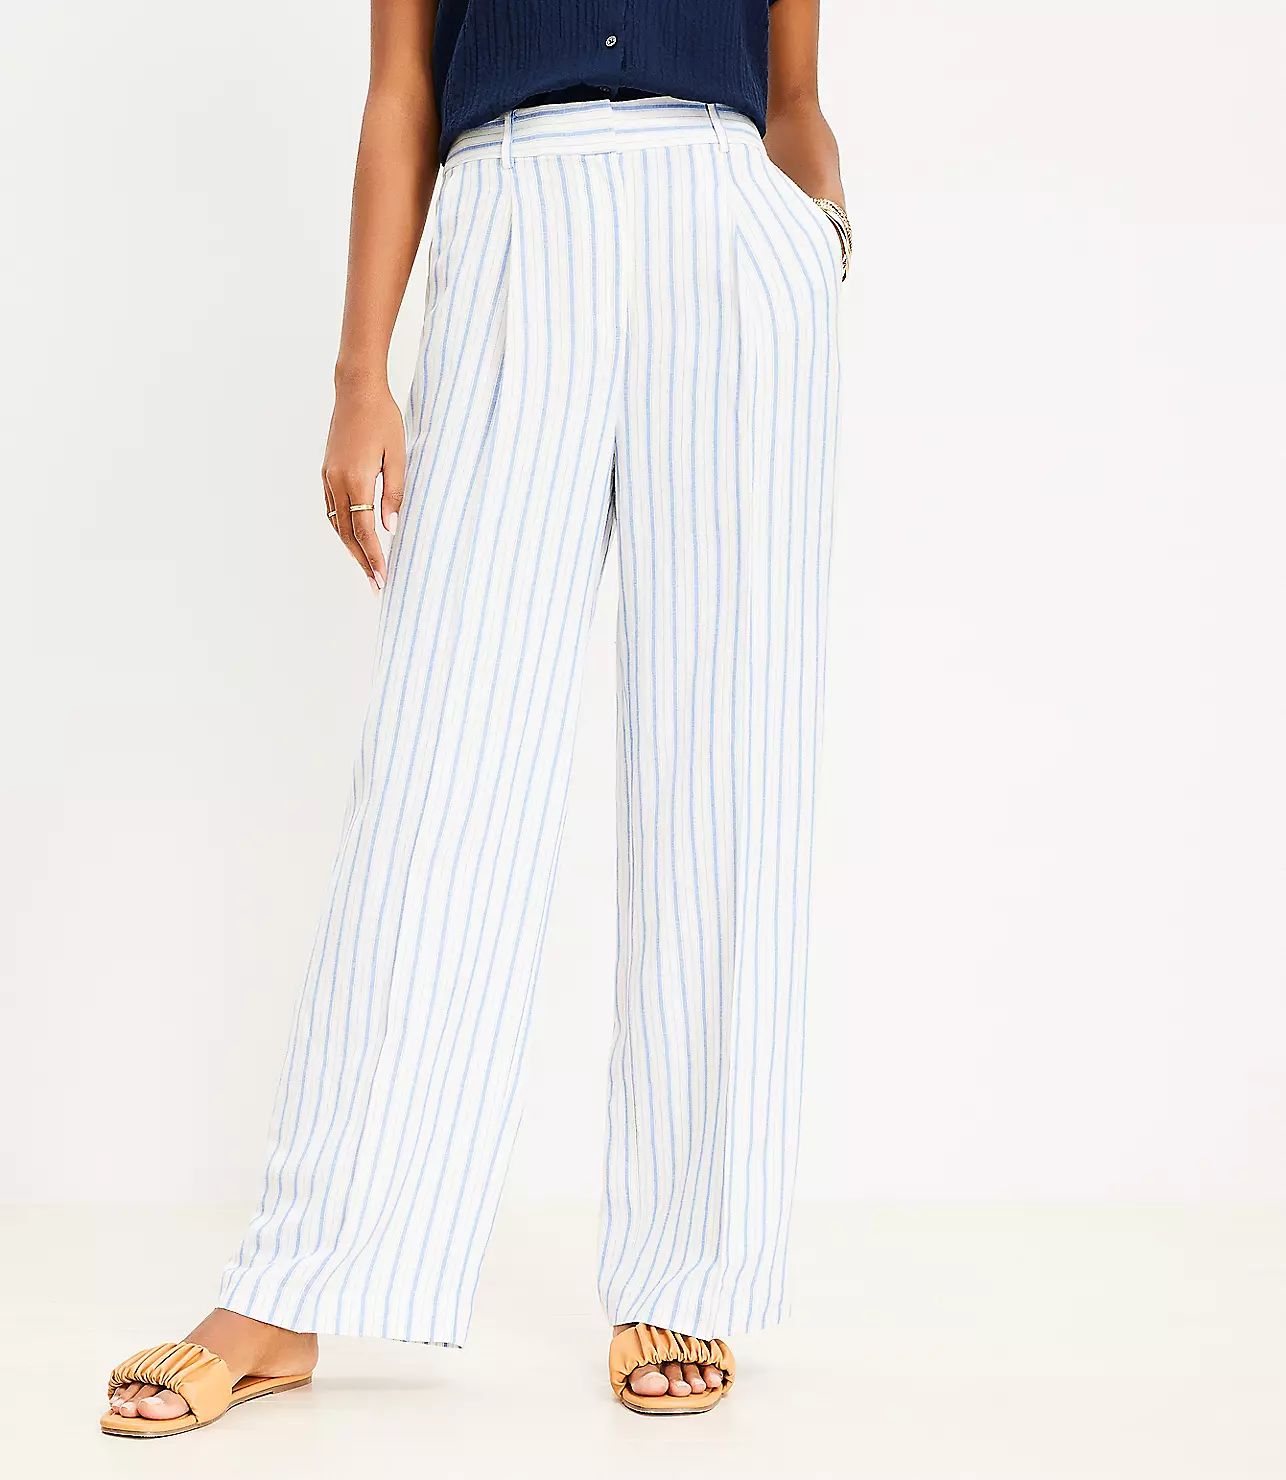 Peyton Trouser Pants in Striped Linen Blend | LOFT